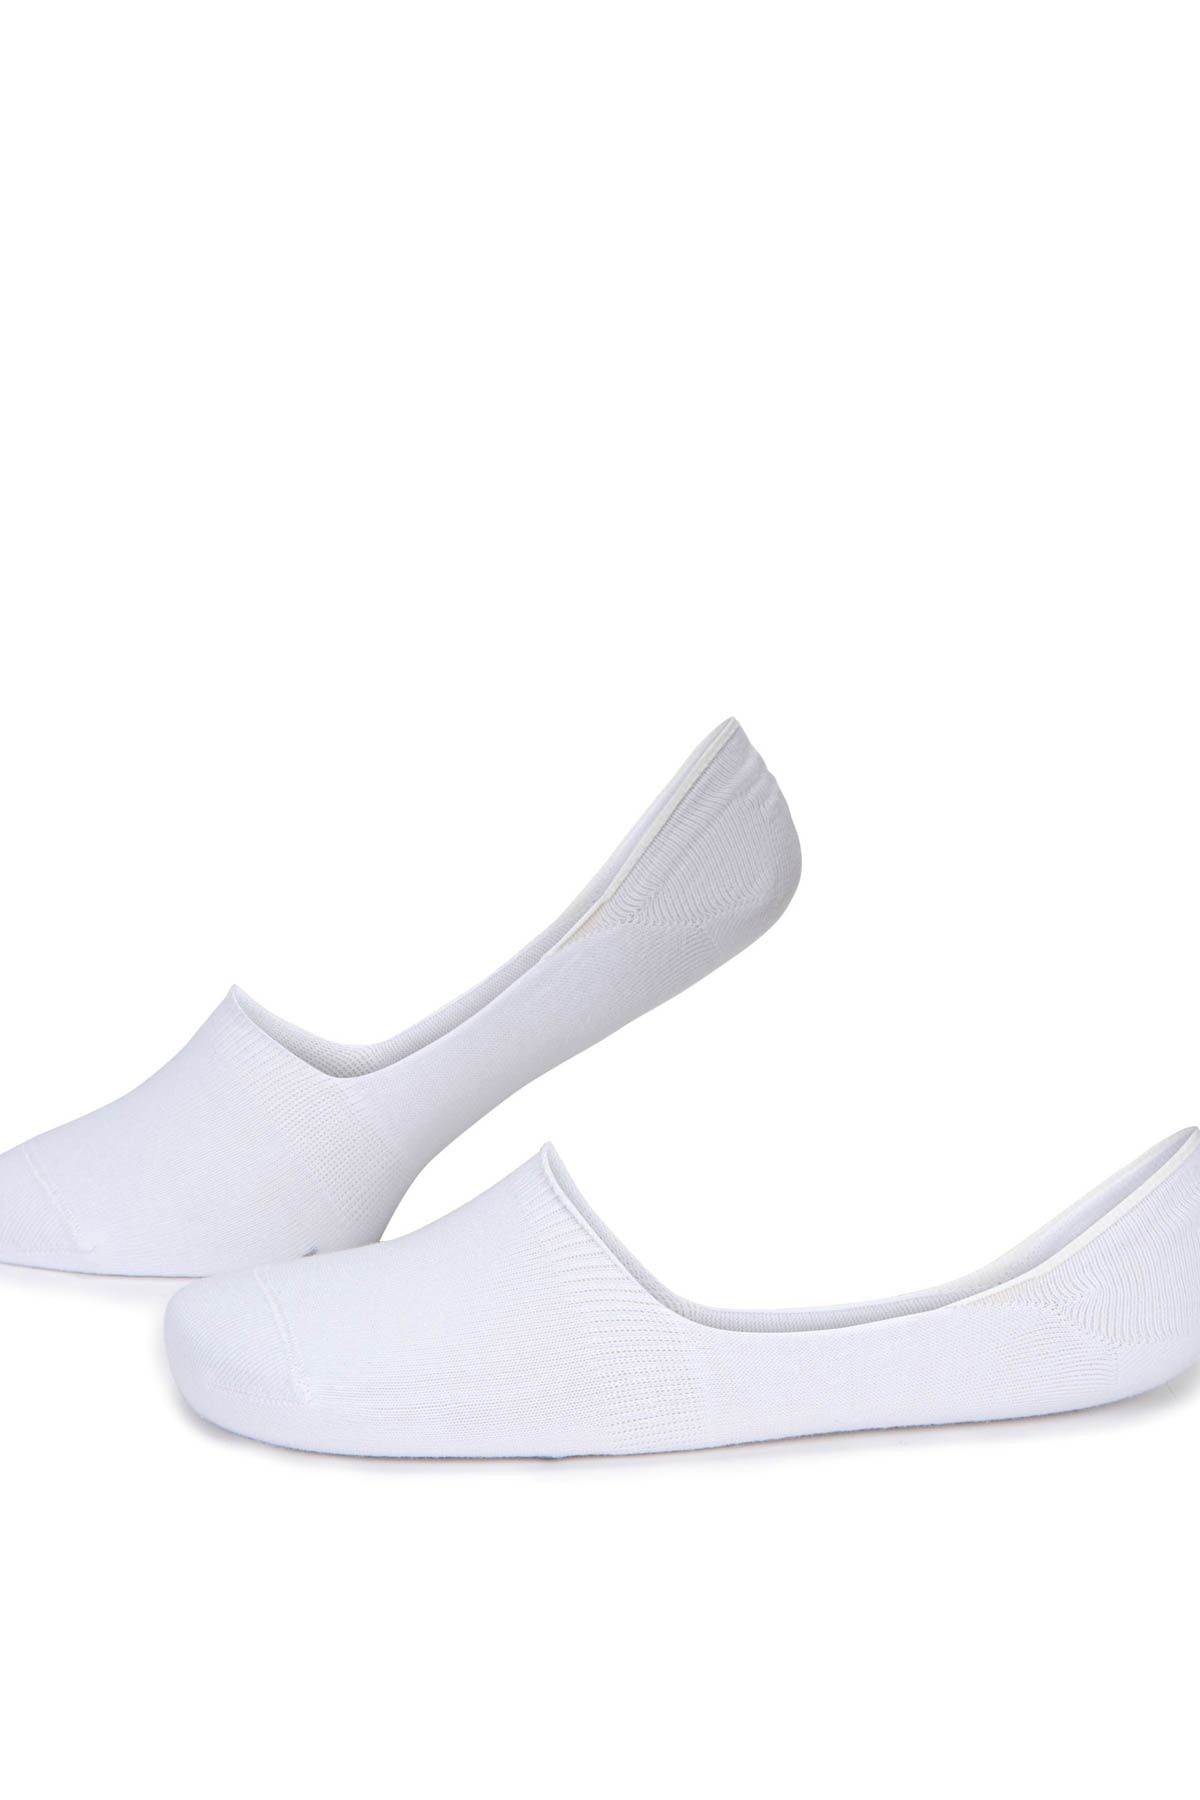 Pierre Cardin Erkek Beyaz Babet Çorap